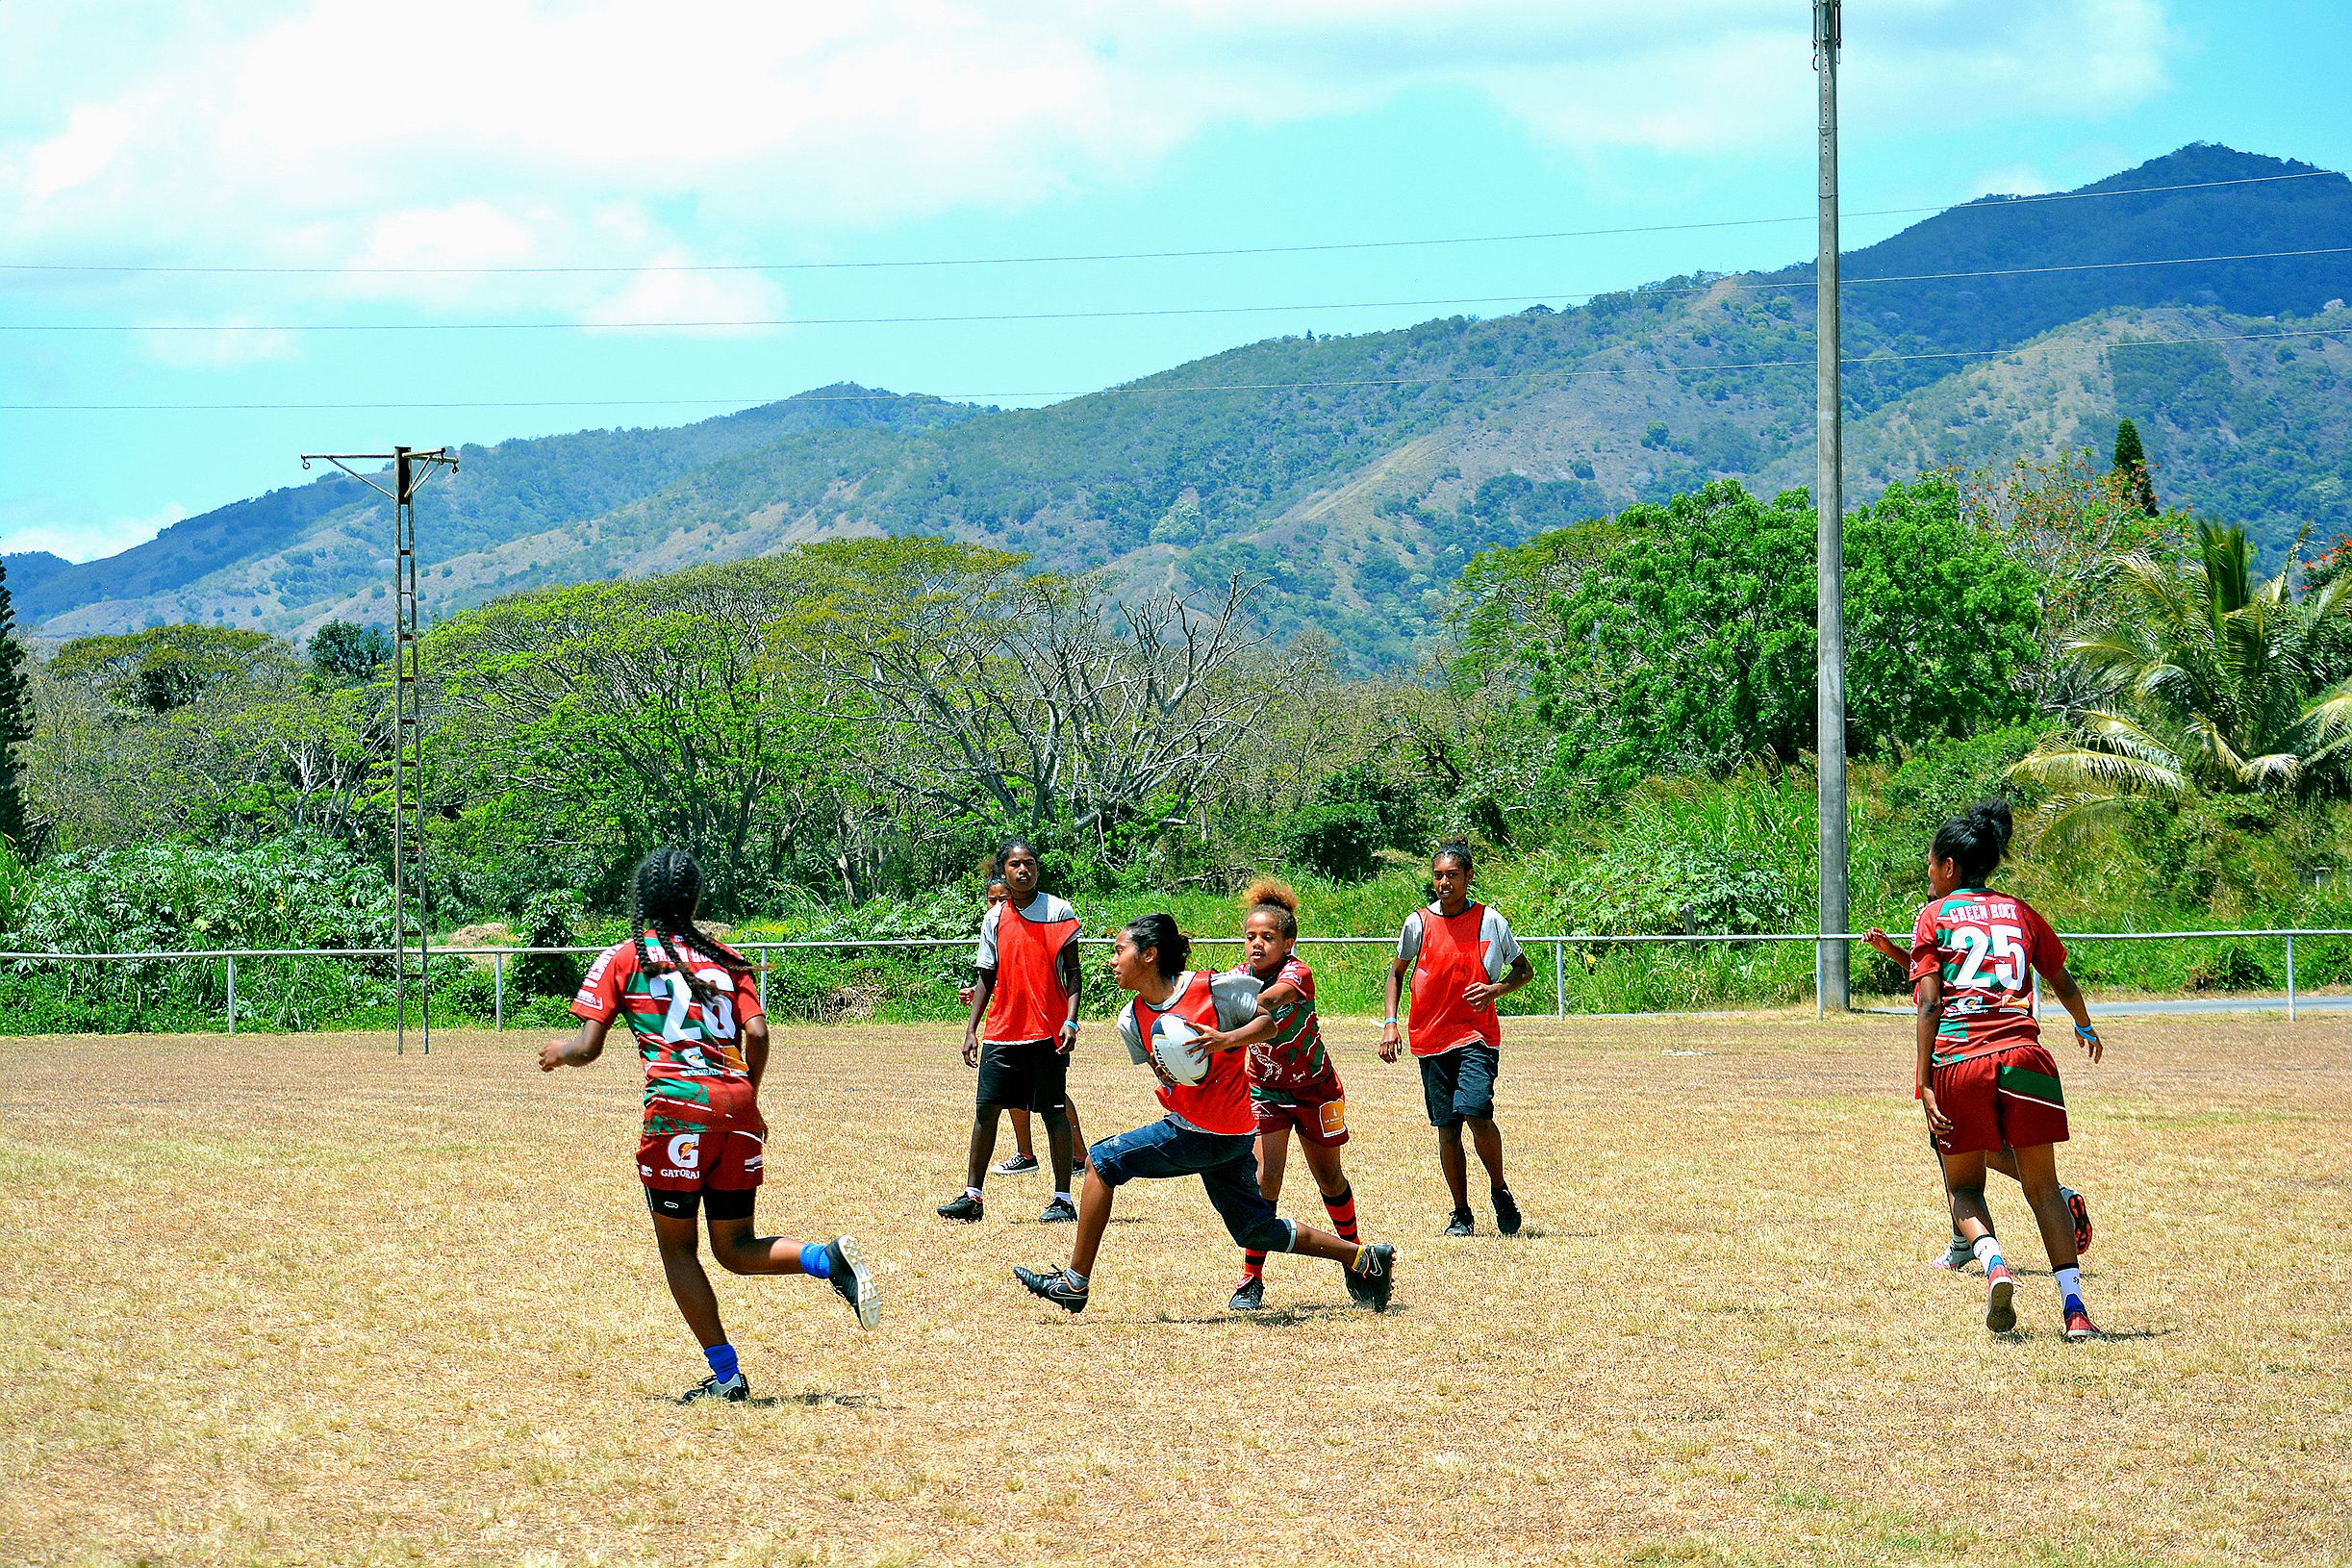 Tous les matchs de rugby se sont déroulés sur le stade municipal situé au centre du village, à l’image de celui des provinces Sud et Iles (notre photo). Sur le terrain, les filles se sont données à fond tout en faisant preuve de beaucoup de fair-play.